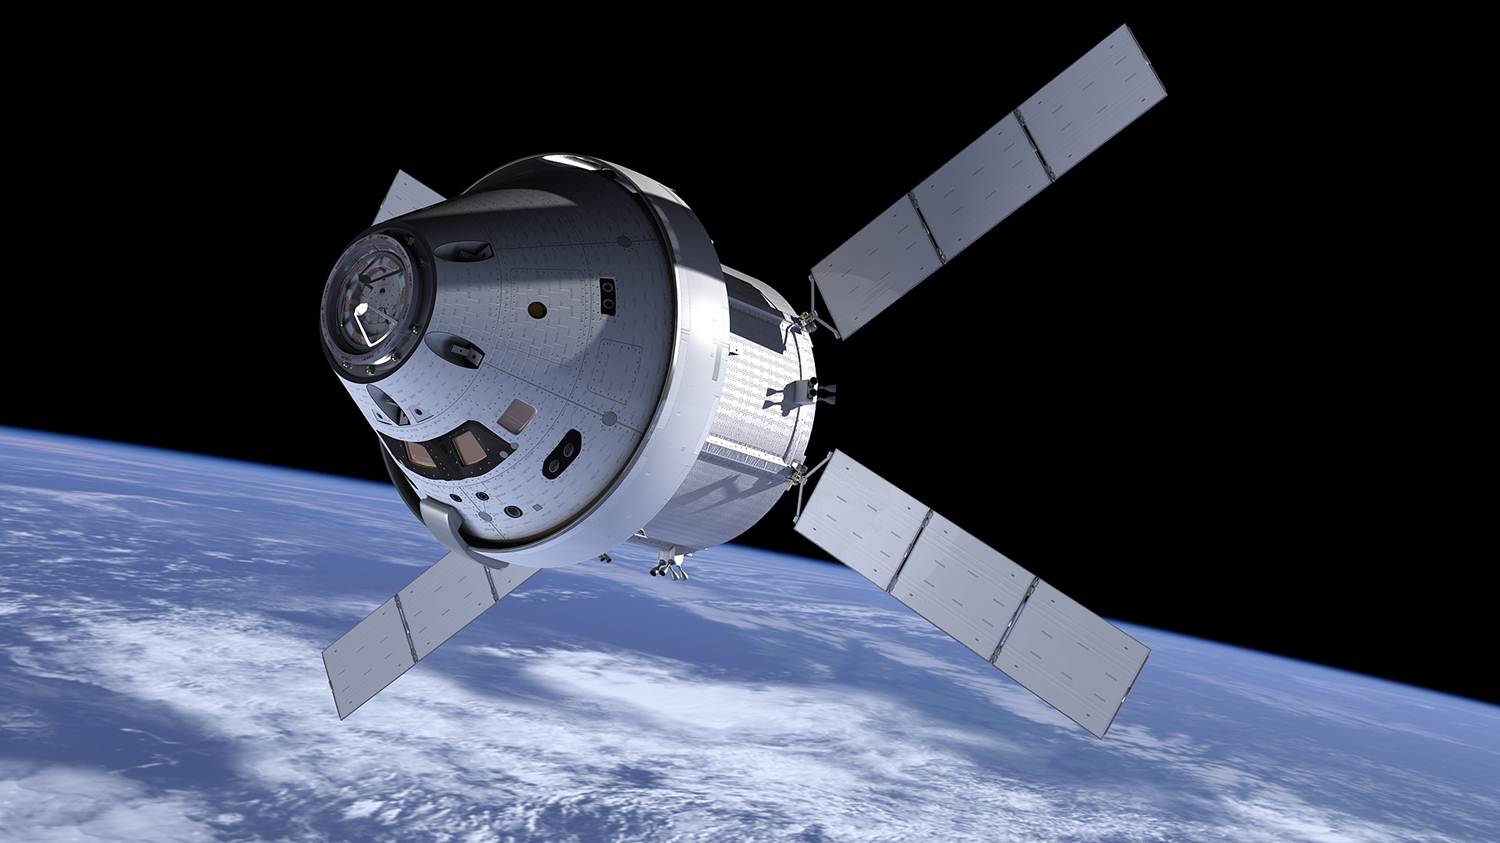 Se la NASA decide di utilizzare privata razzo nella prossima missione sulla Luna, questo cambierebbe tutta l'industria spaziale